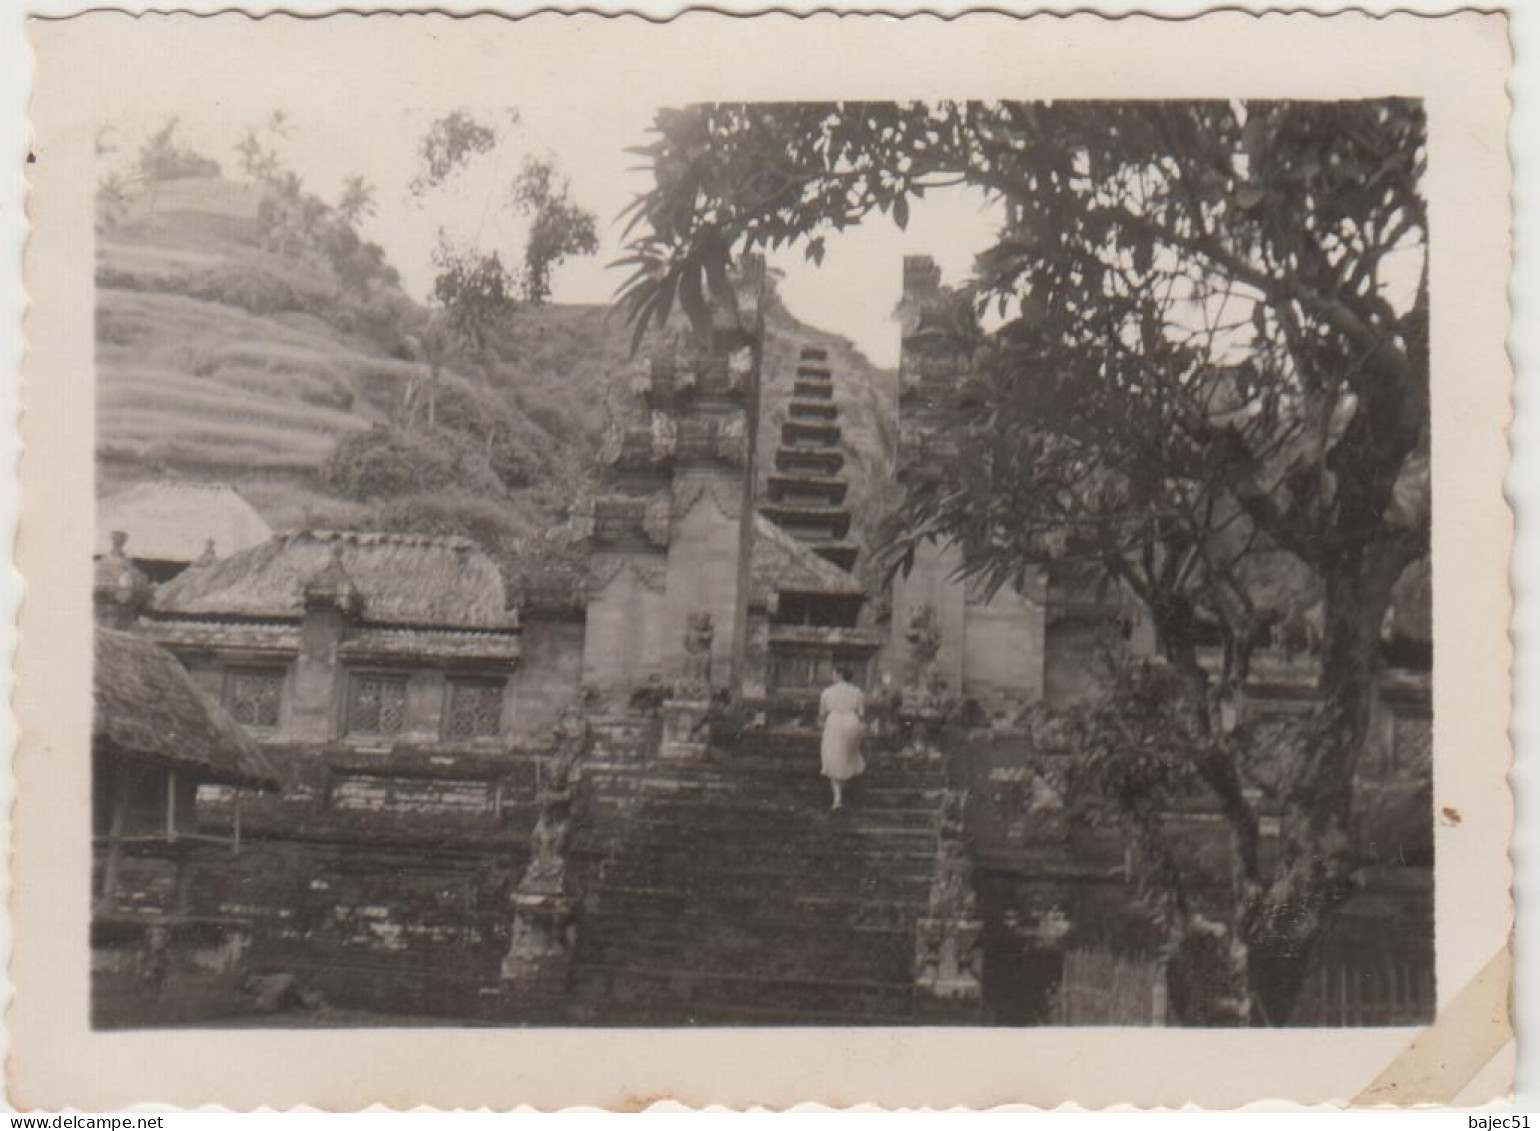 59 photos d'Indonésie de 1952 " dont 11 photos de crémation " voir détails de toutes les photos "dont belle animations